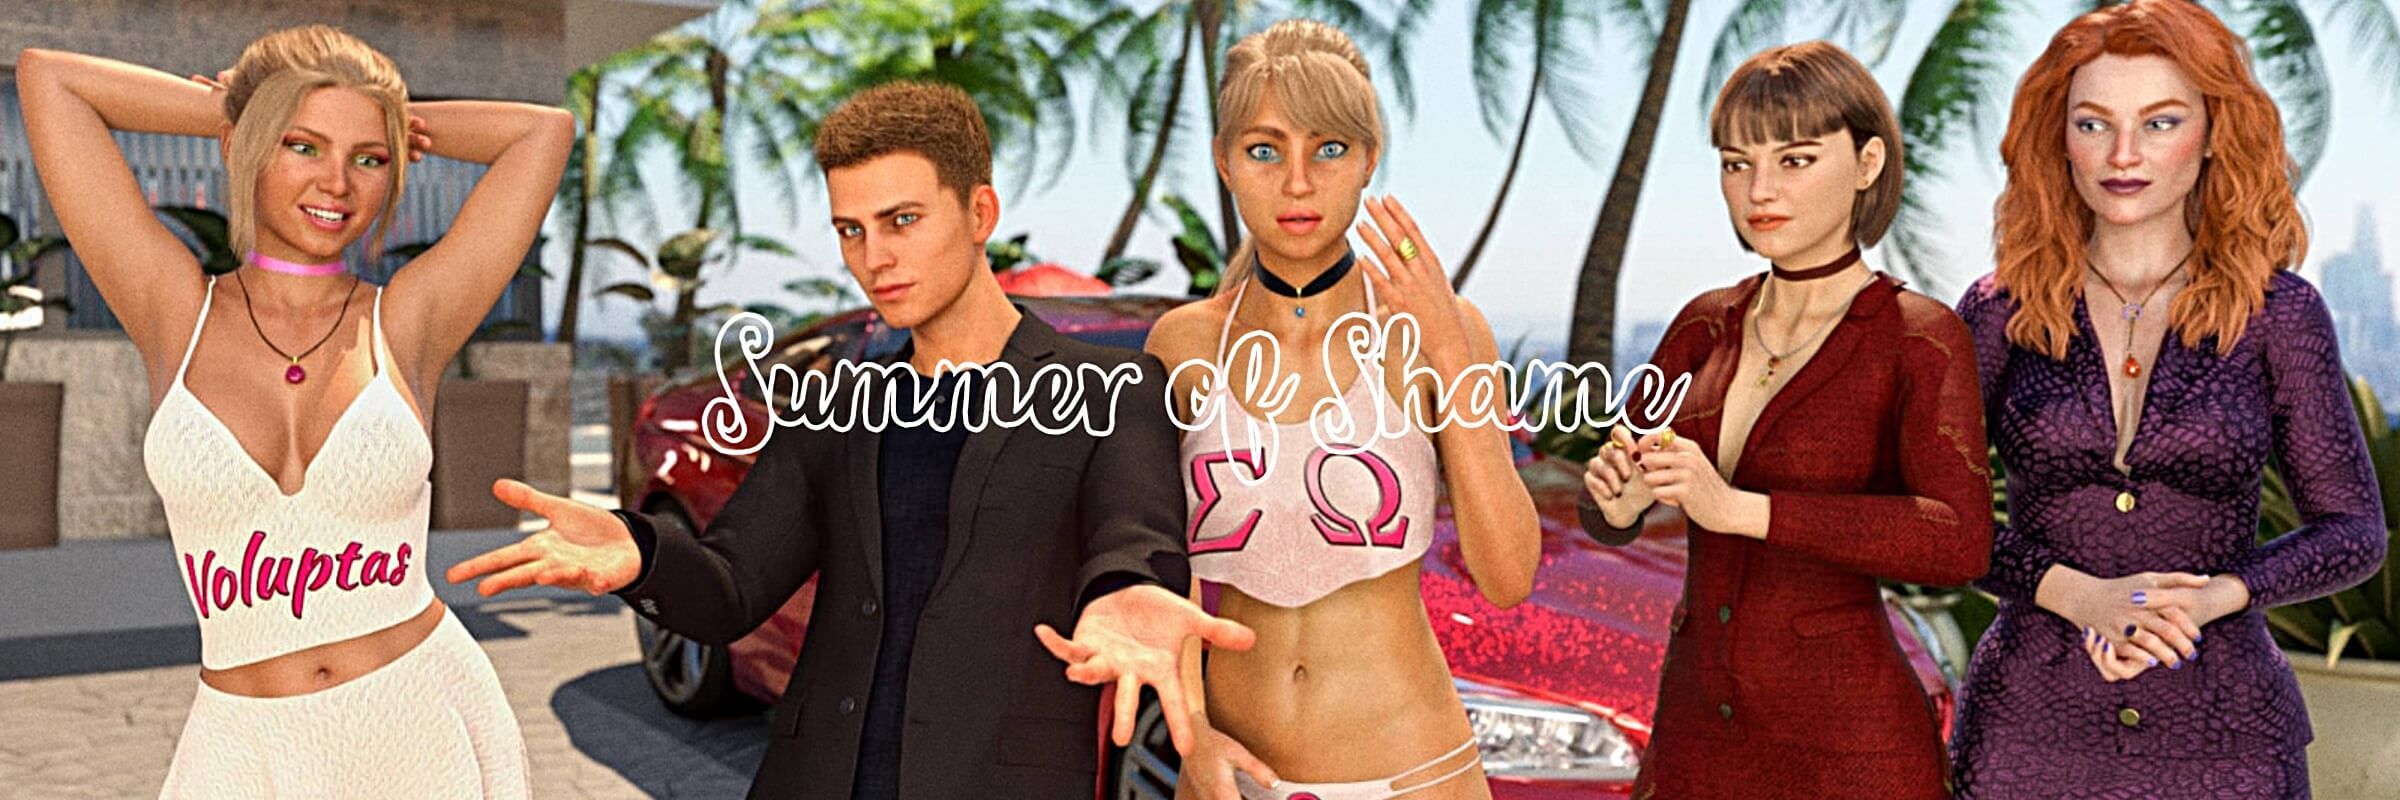 Summer of Shame [v0.28]